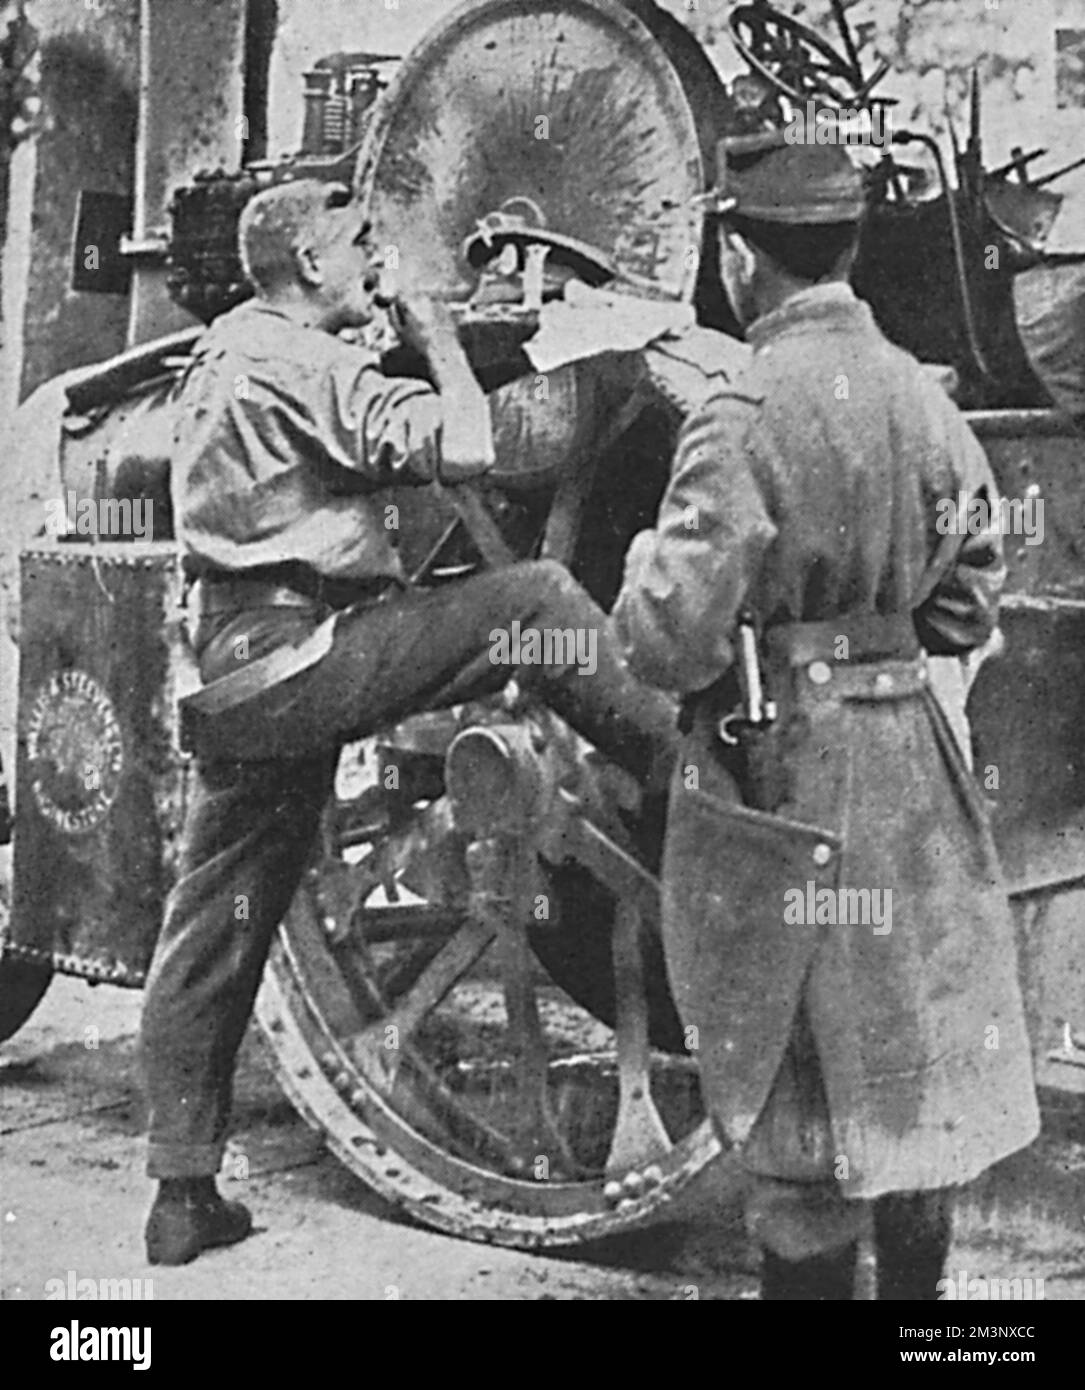 Ein Soldat der britischen Expeditionstruppe, der in Boulogne angekommen ist, wird beim Rasieren von einem französischen Kameraden beobachtet. August 1914 Stockfoto